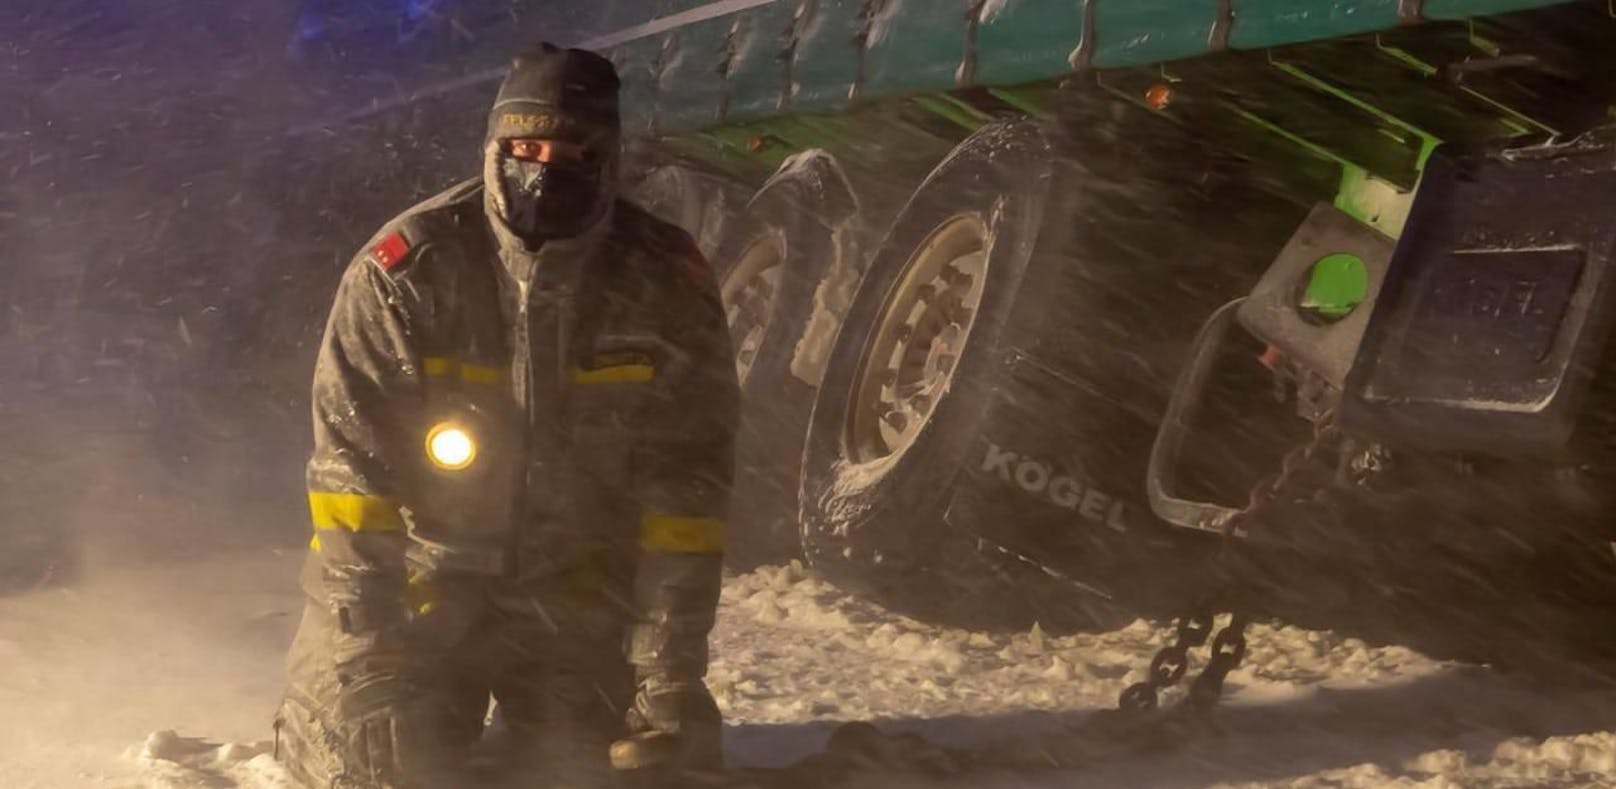 Feuerwehr barg Lkw trotz Orkanböen und Eiseskälte